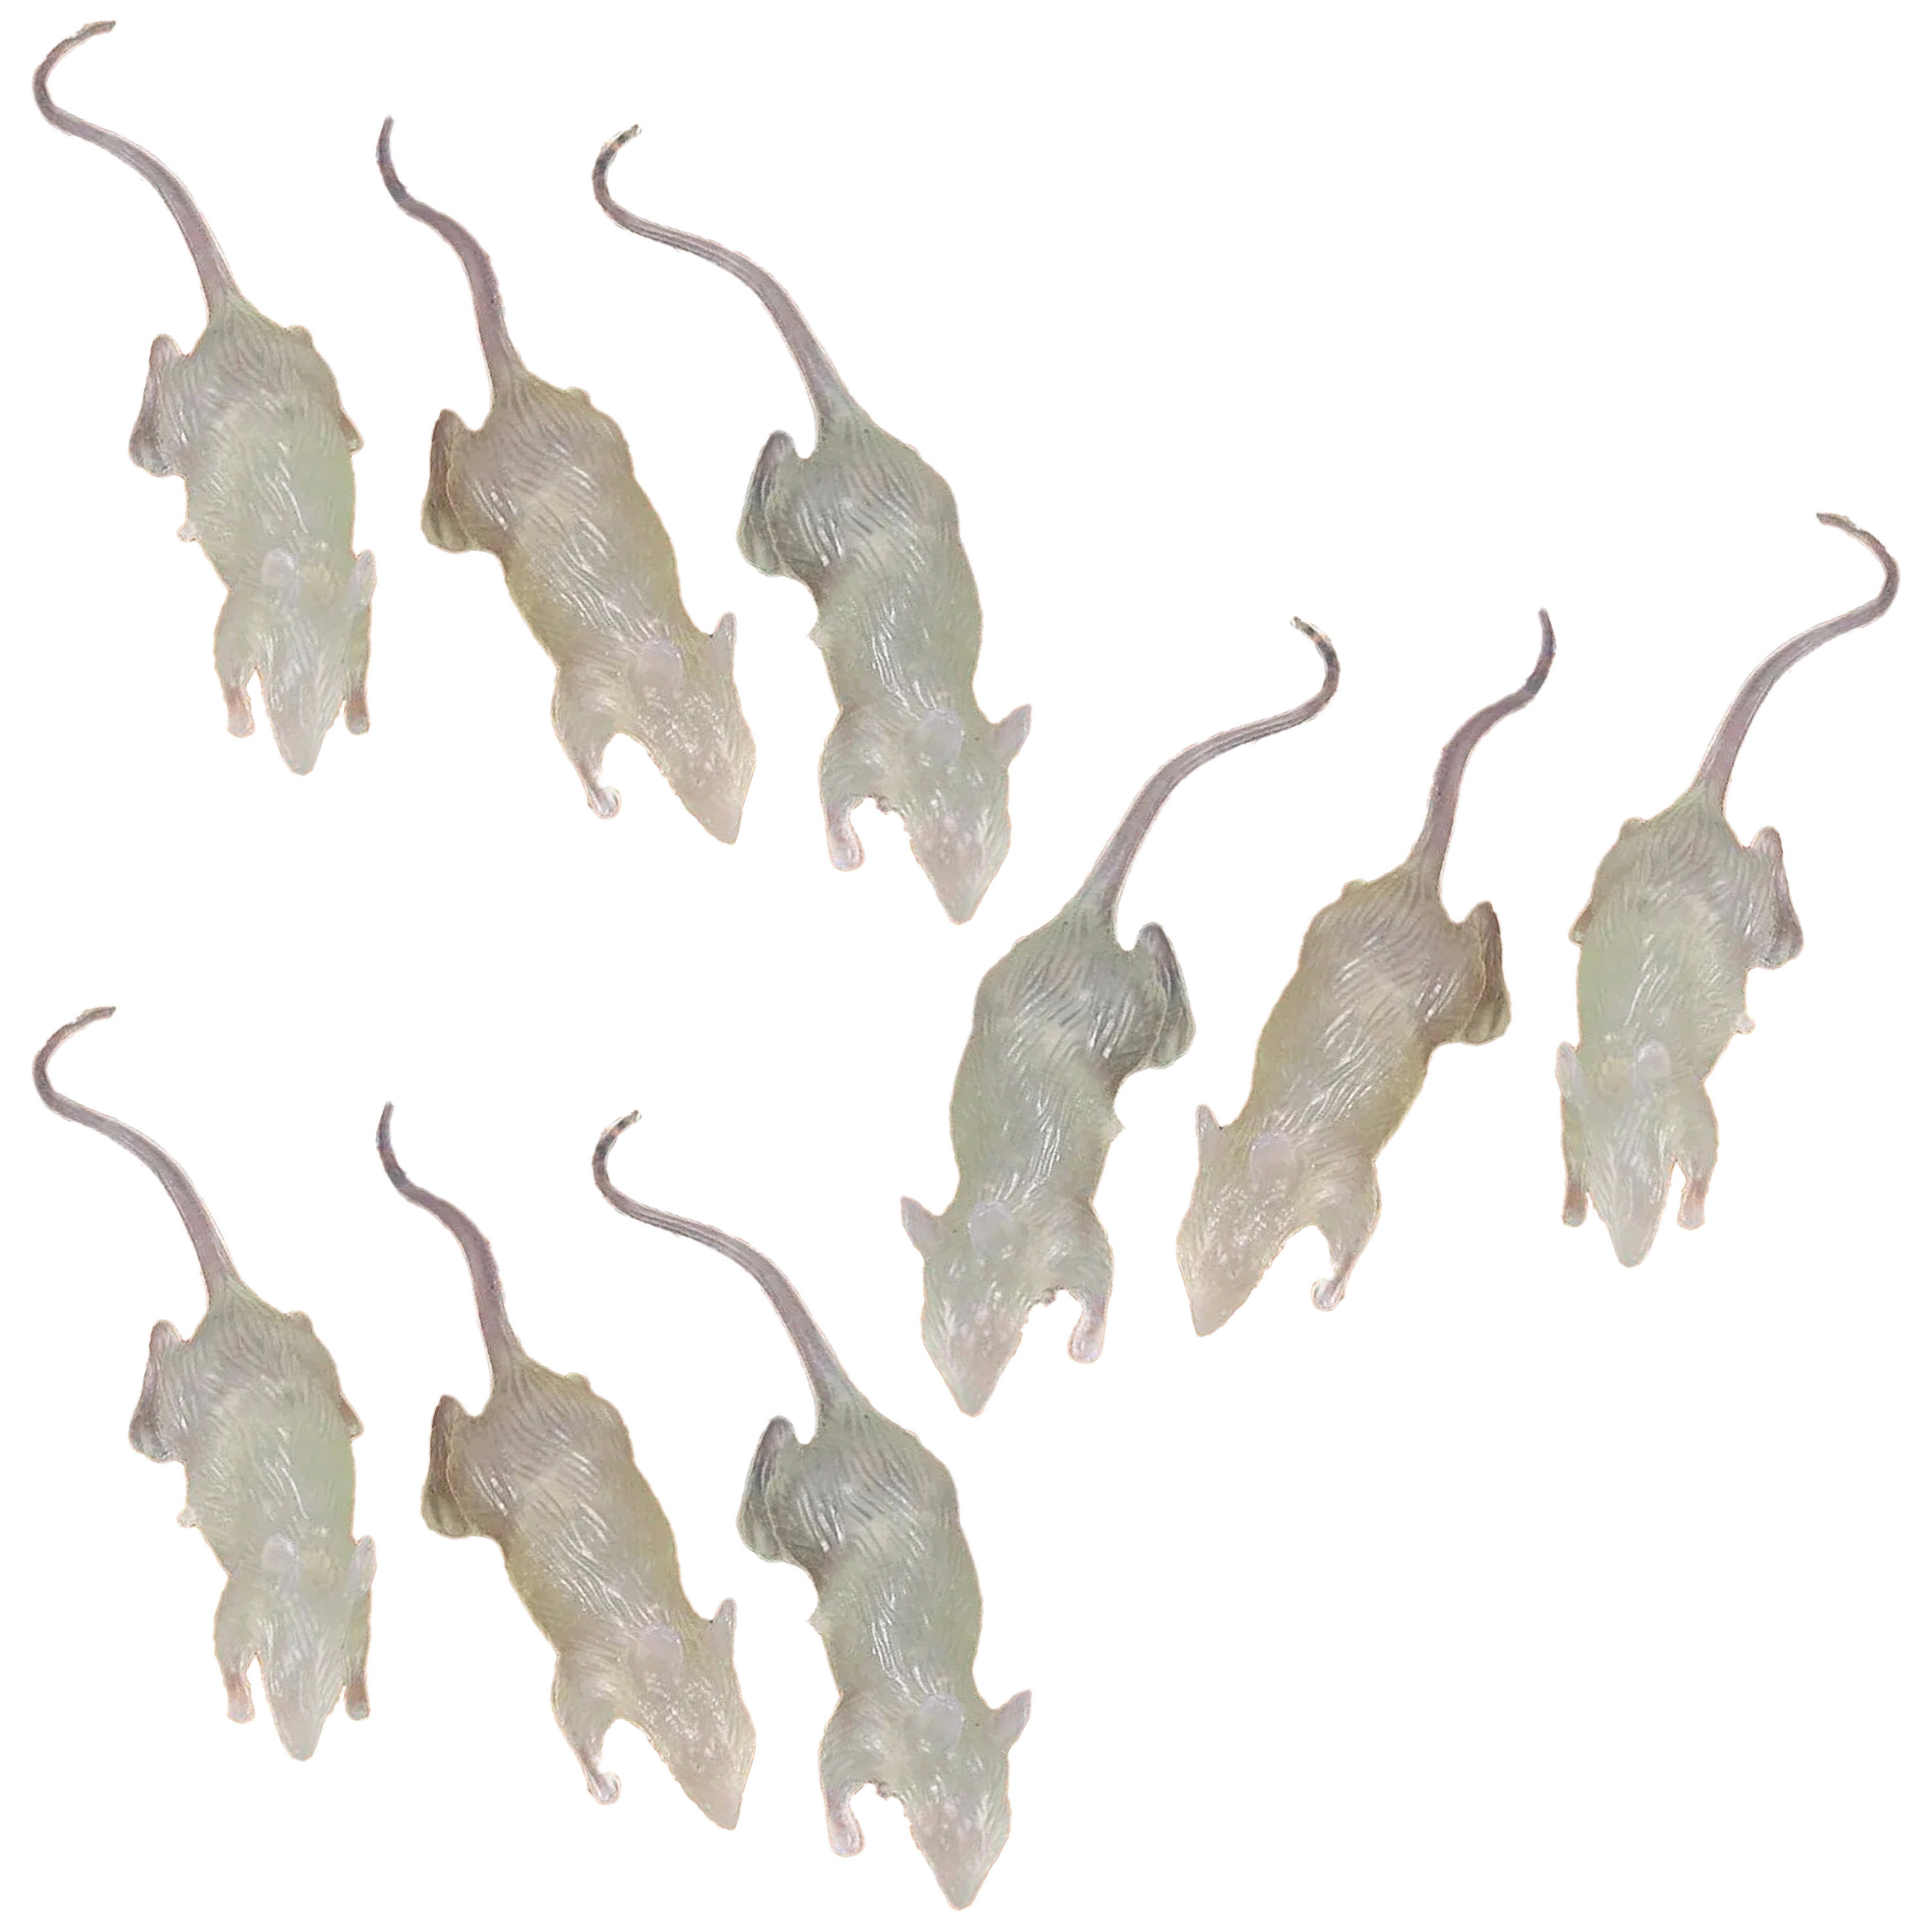 Nep ratten 7 cm glow in the dark 9x stuks Horror-griezel thema decoratie dieren